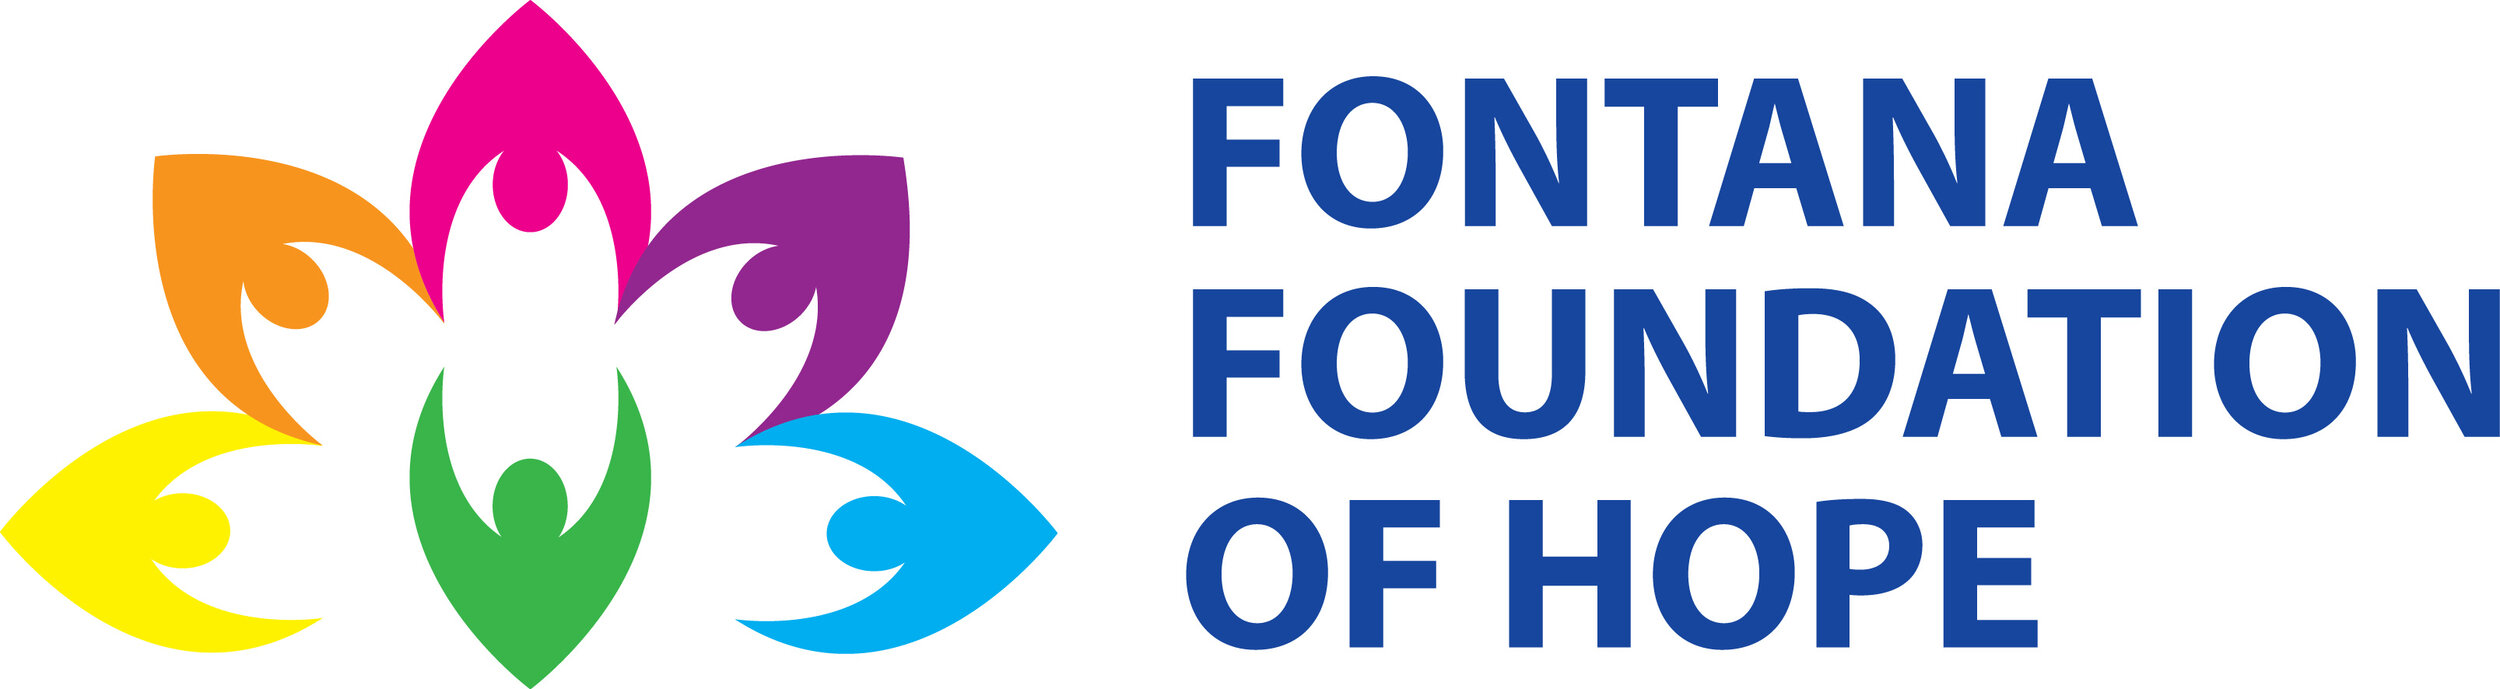 Fontana Foundation of Hope.jpg